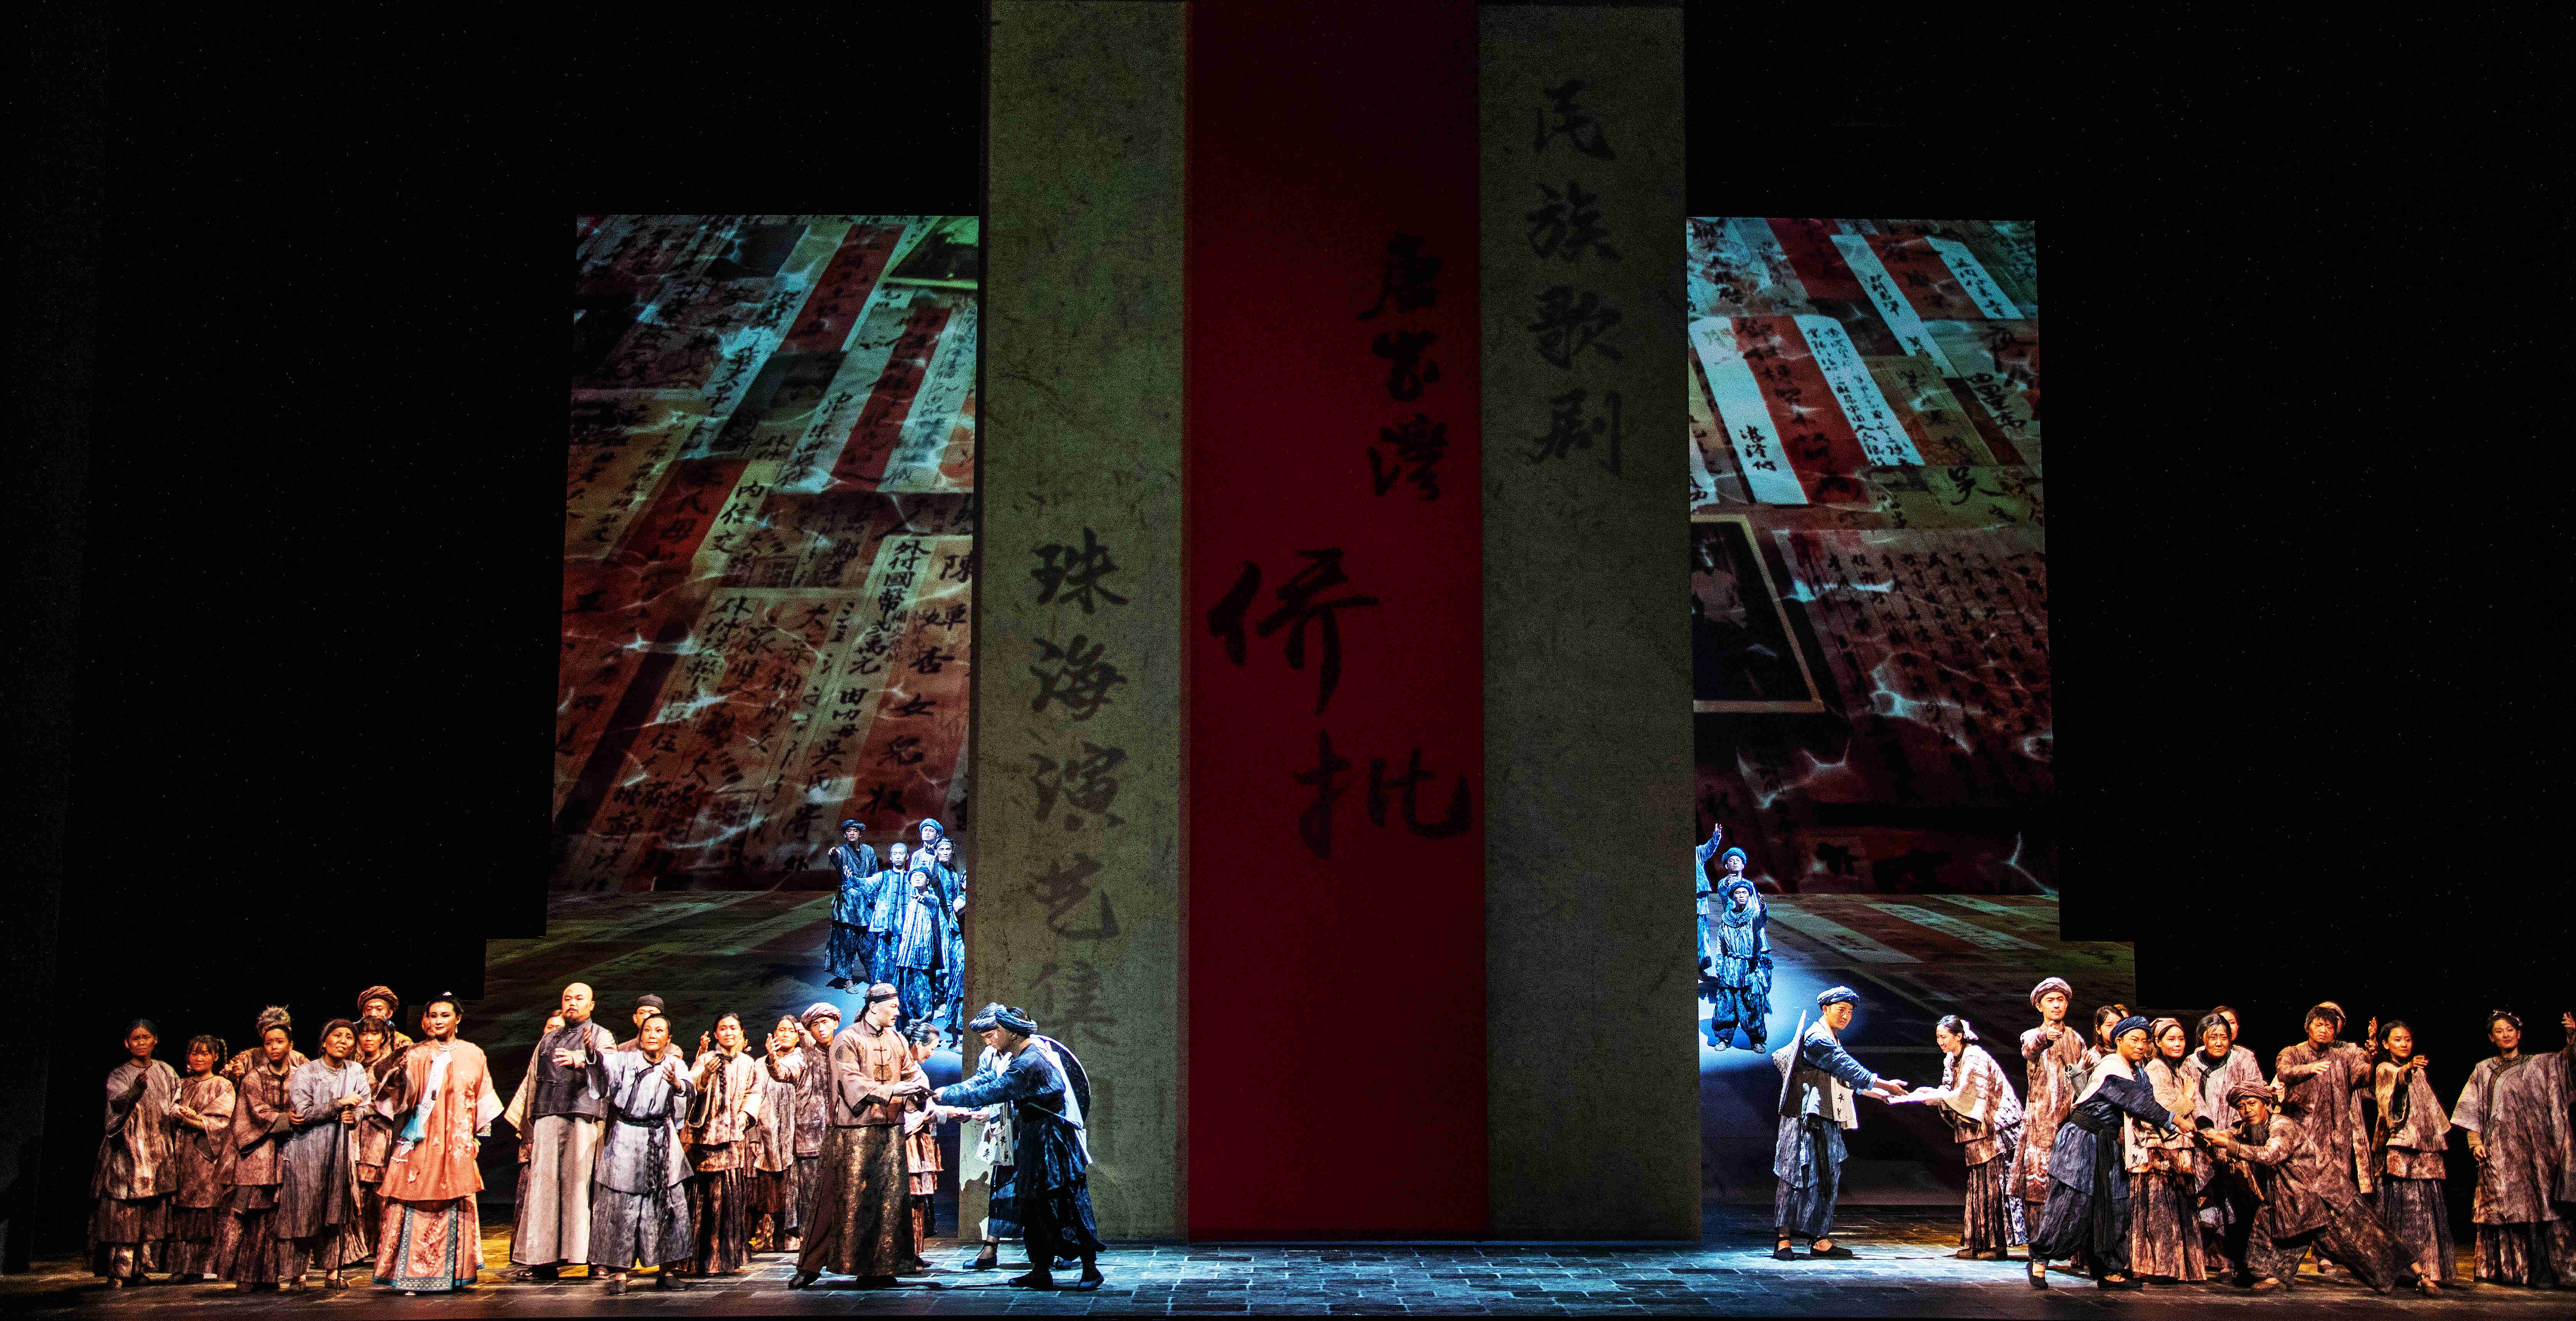  民族歌剧《侨批》10月4日将在广州大剧院首演